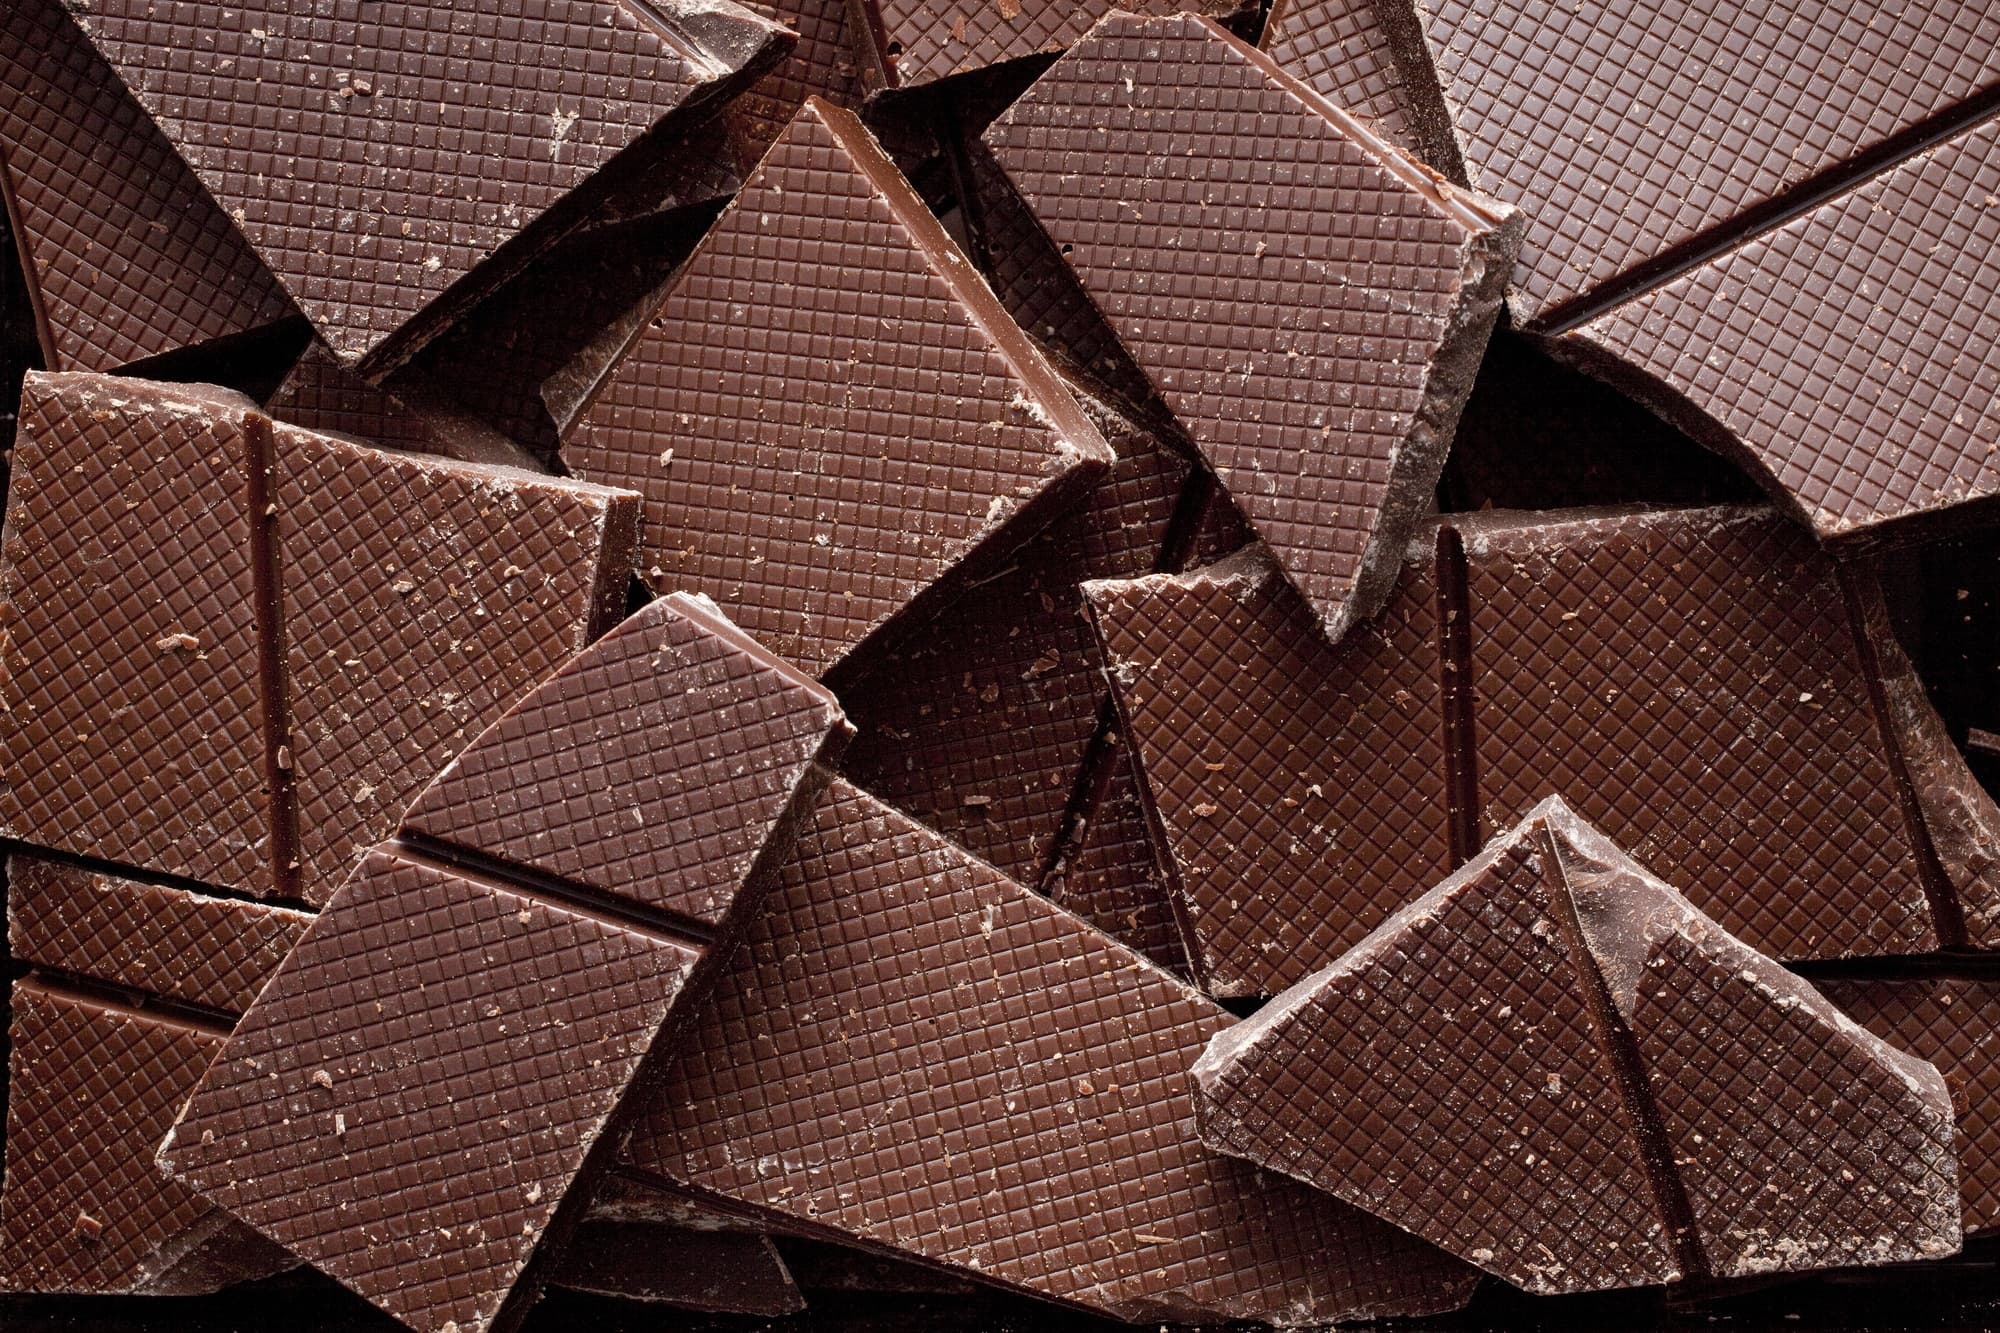 チョコレートのイメージ